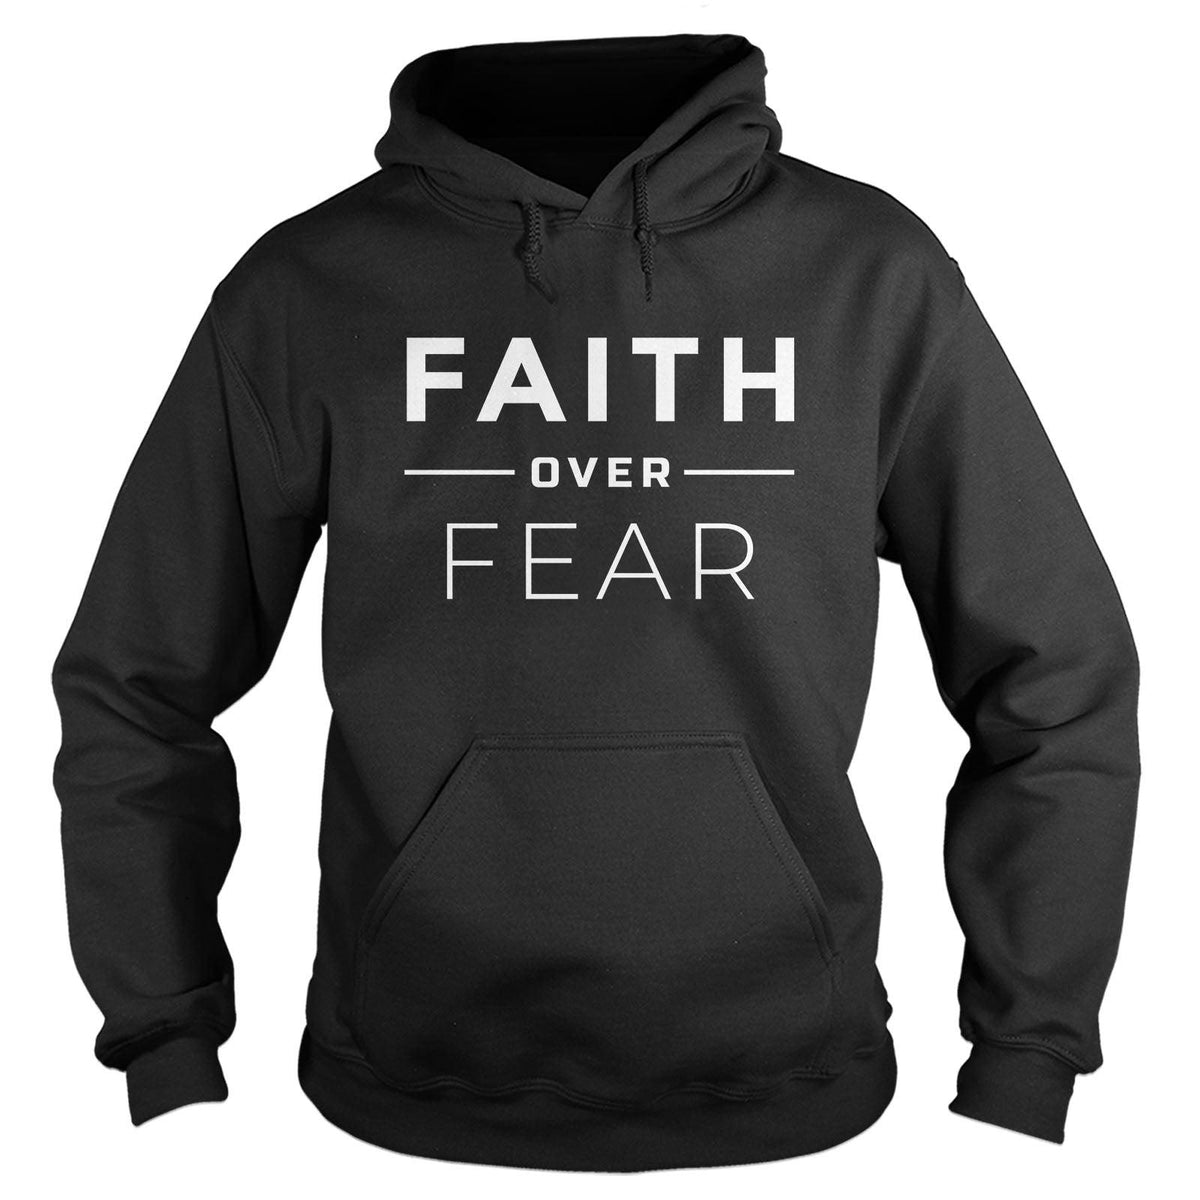 Faith Over Fear Hoodie - Our True God